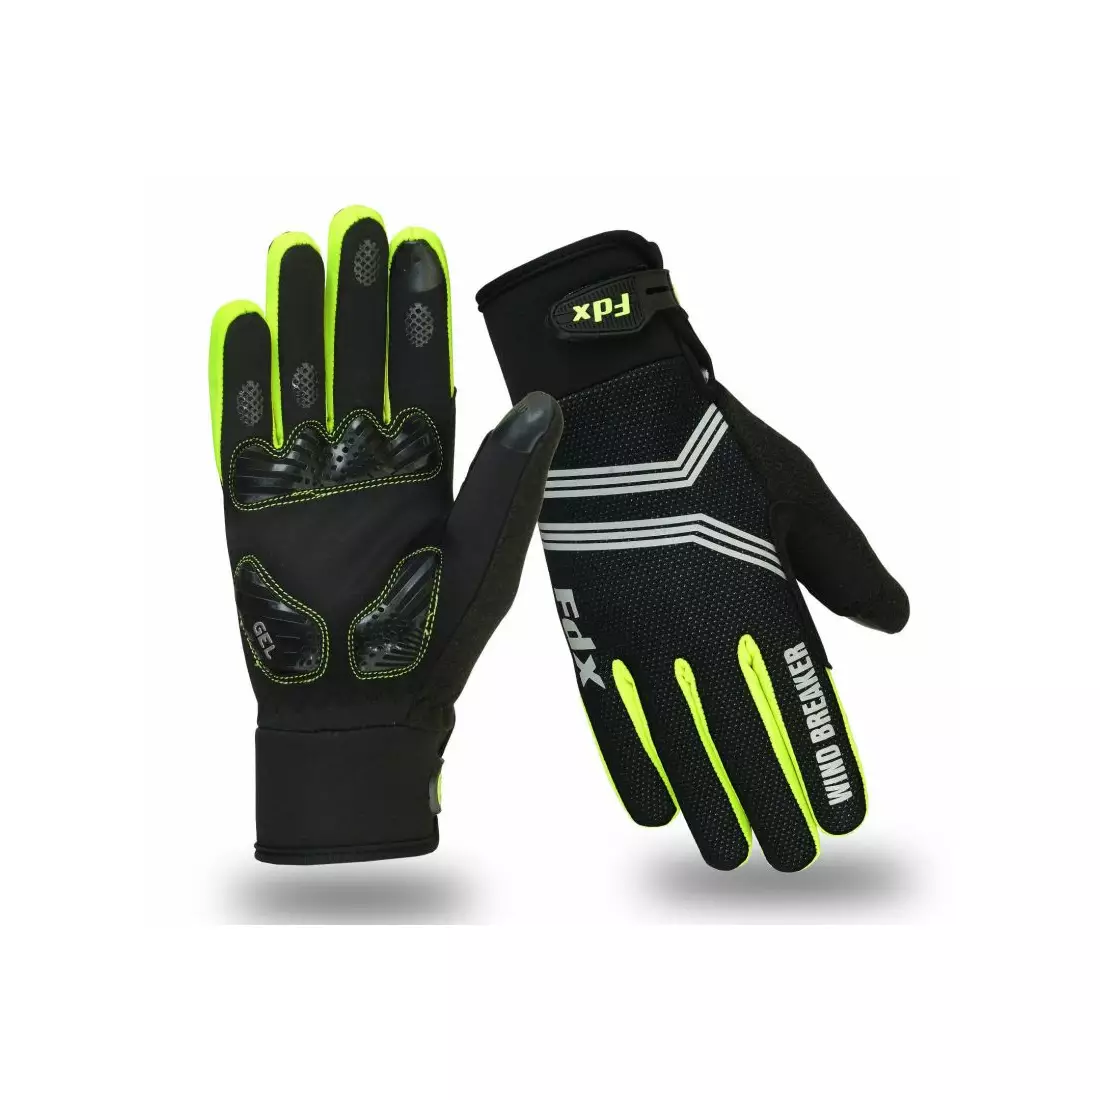 FDX Wind Breaker Gel winter cycling gloves, black and fluorine